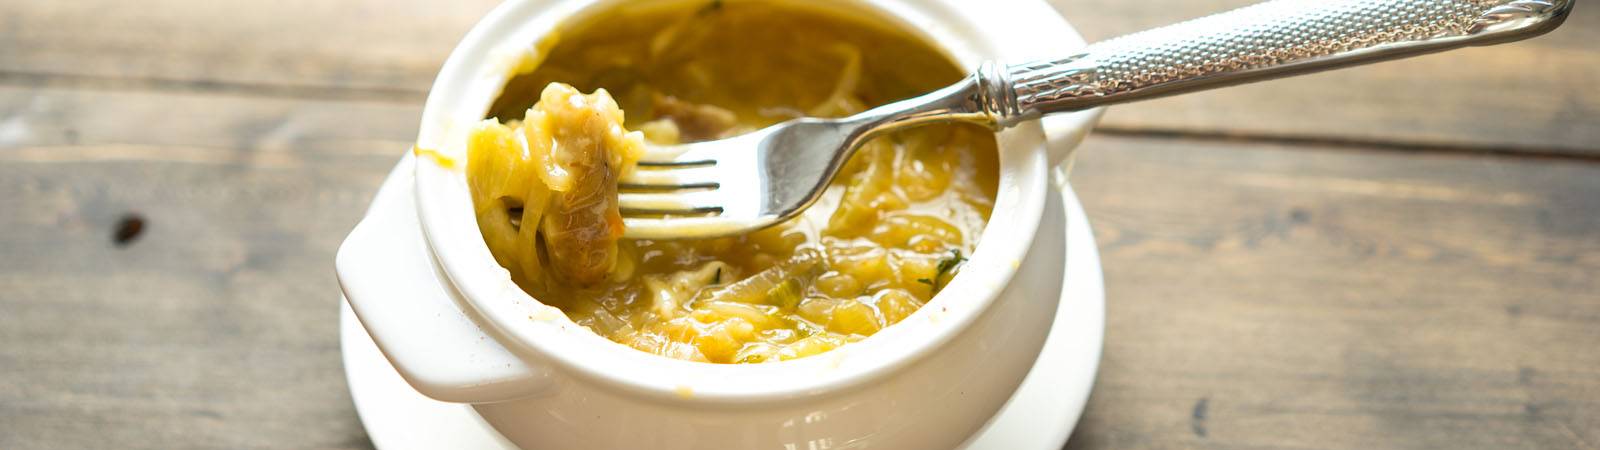 Классический французский луковый суп — вкус и текстура